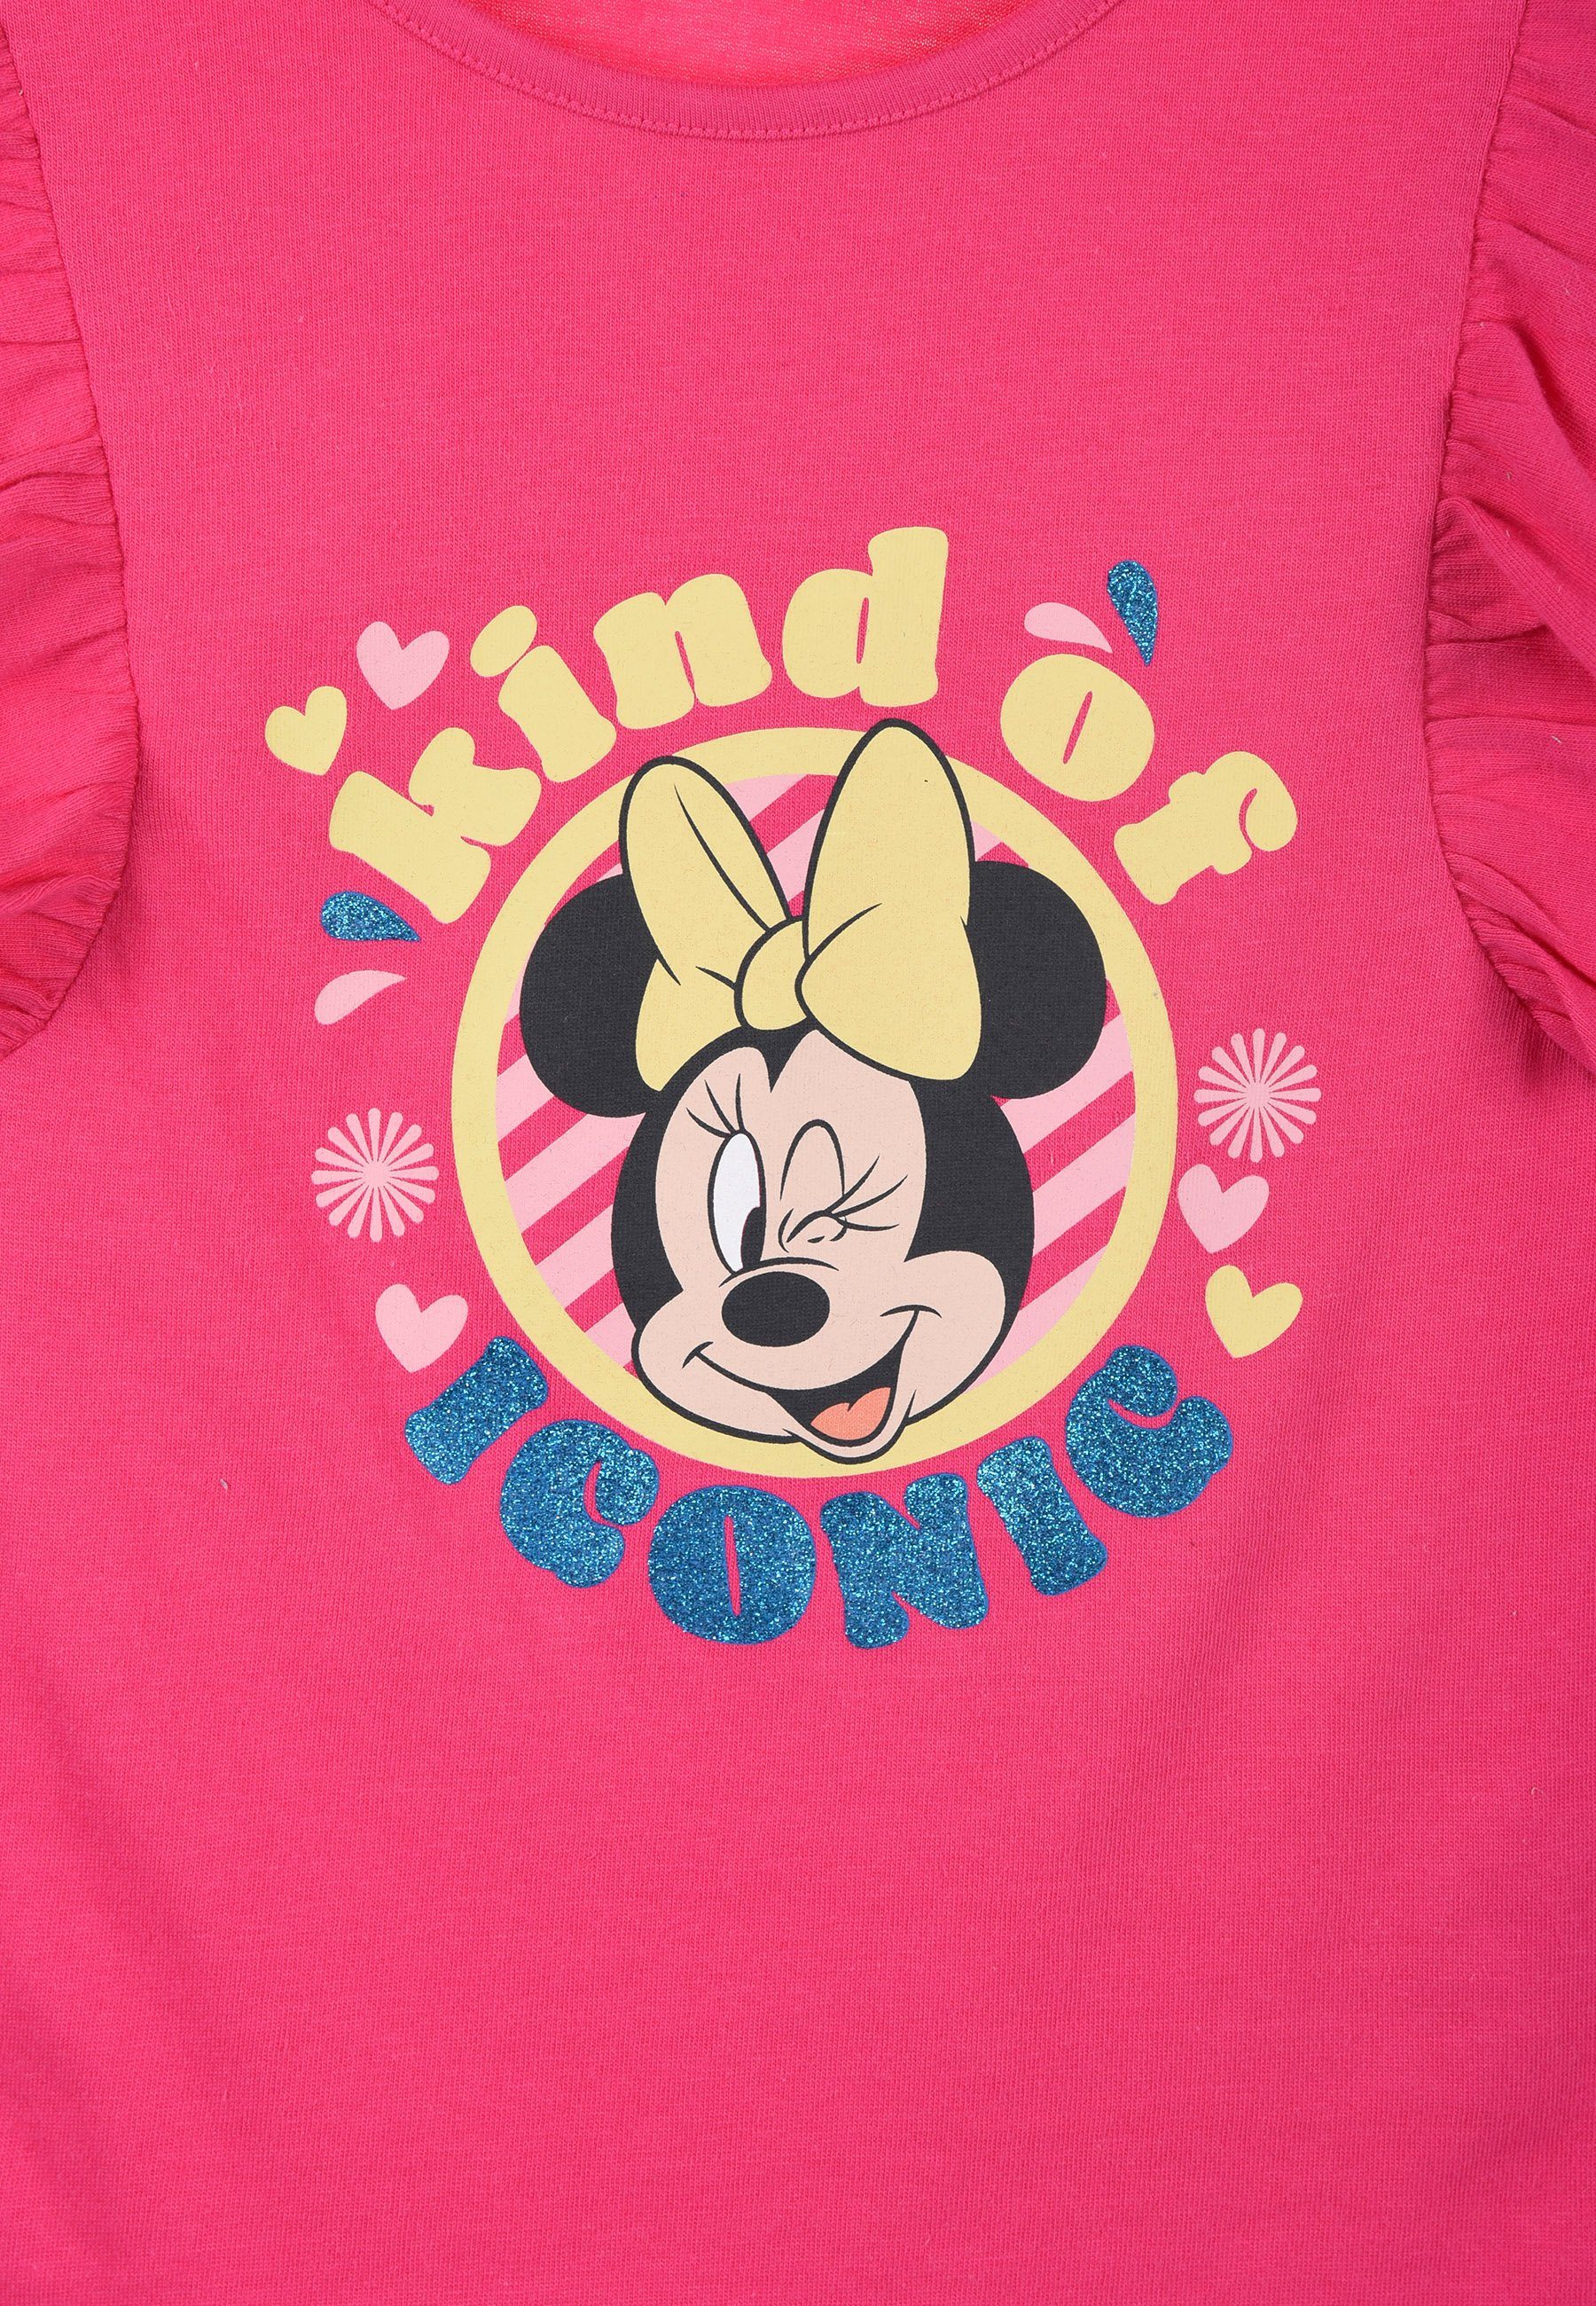 kurzarm Disney Shirt Pink Sommer Minnie Oberteil Mädchen Kinder T-Shirt Mouse T-Shirt